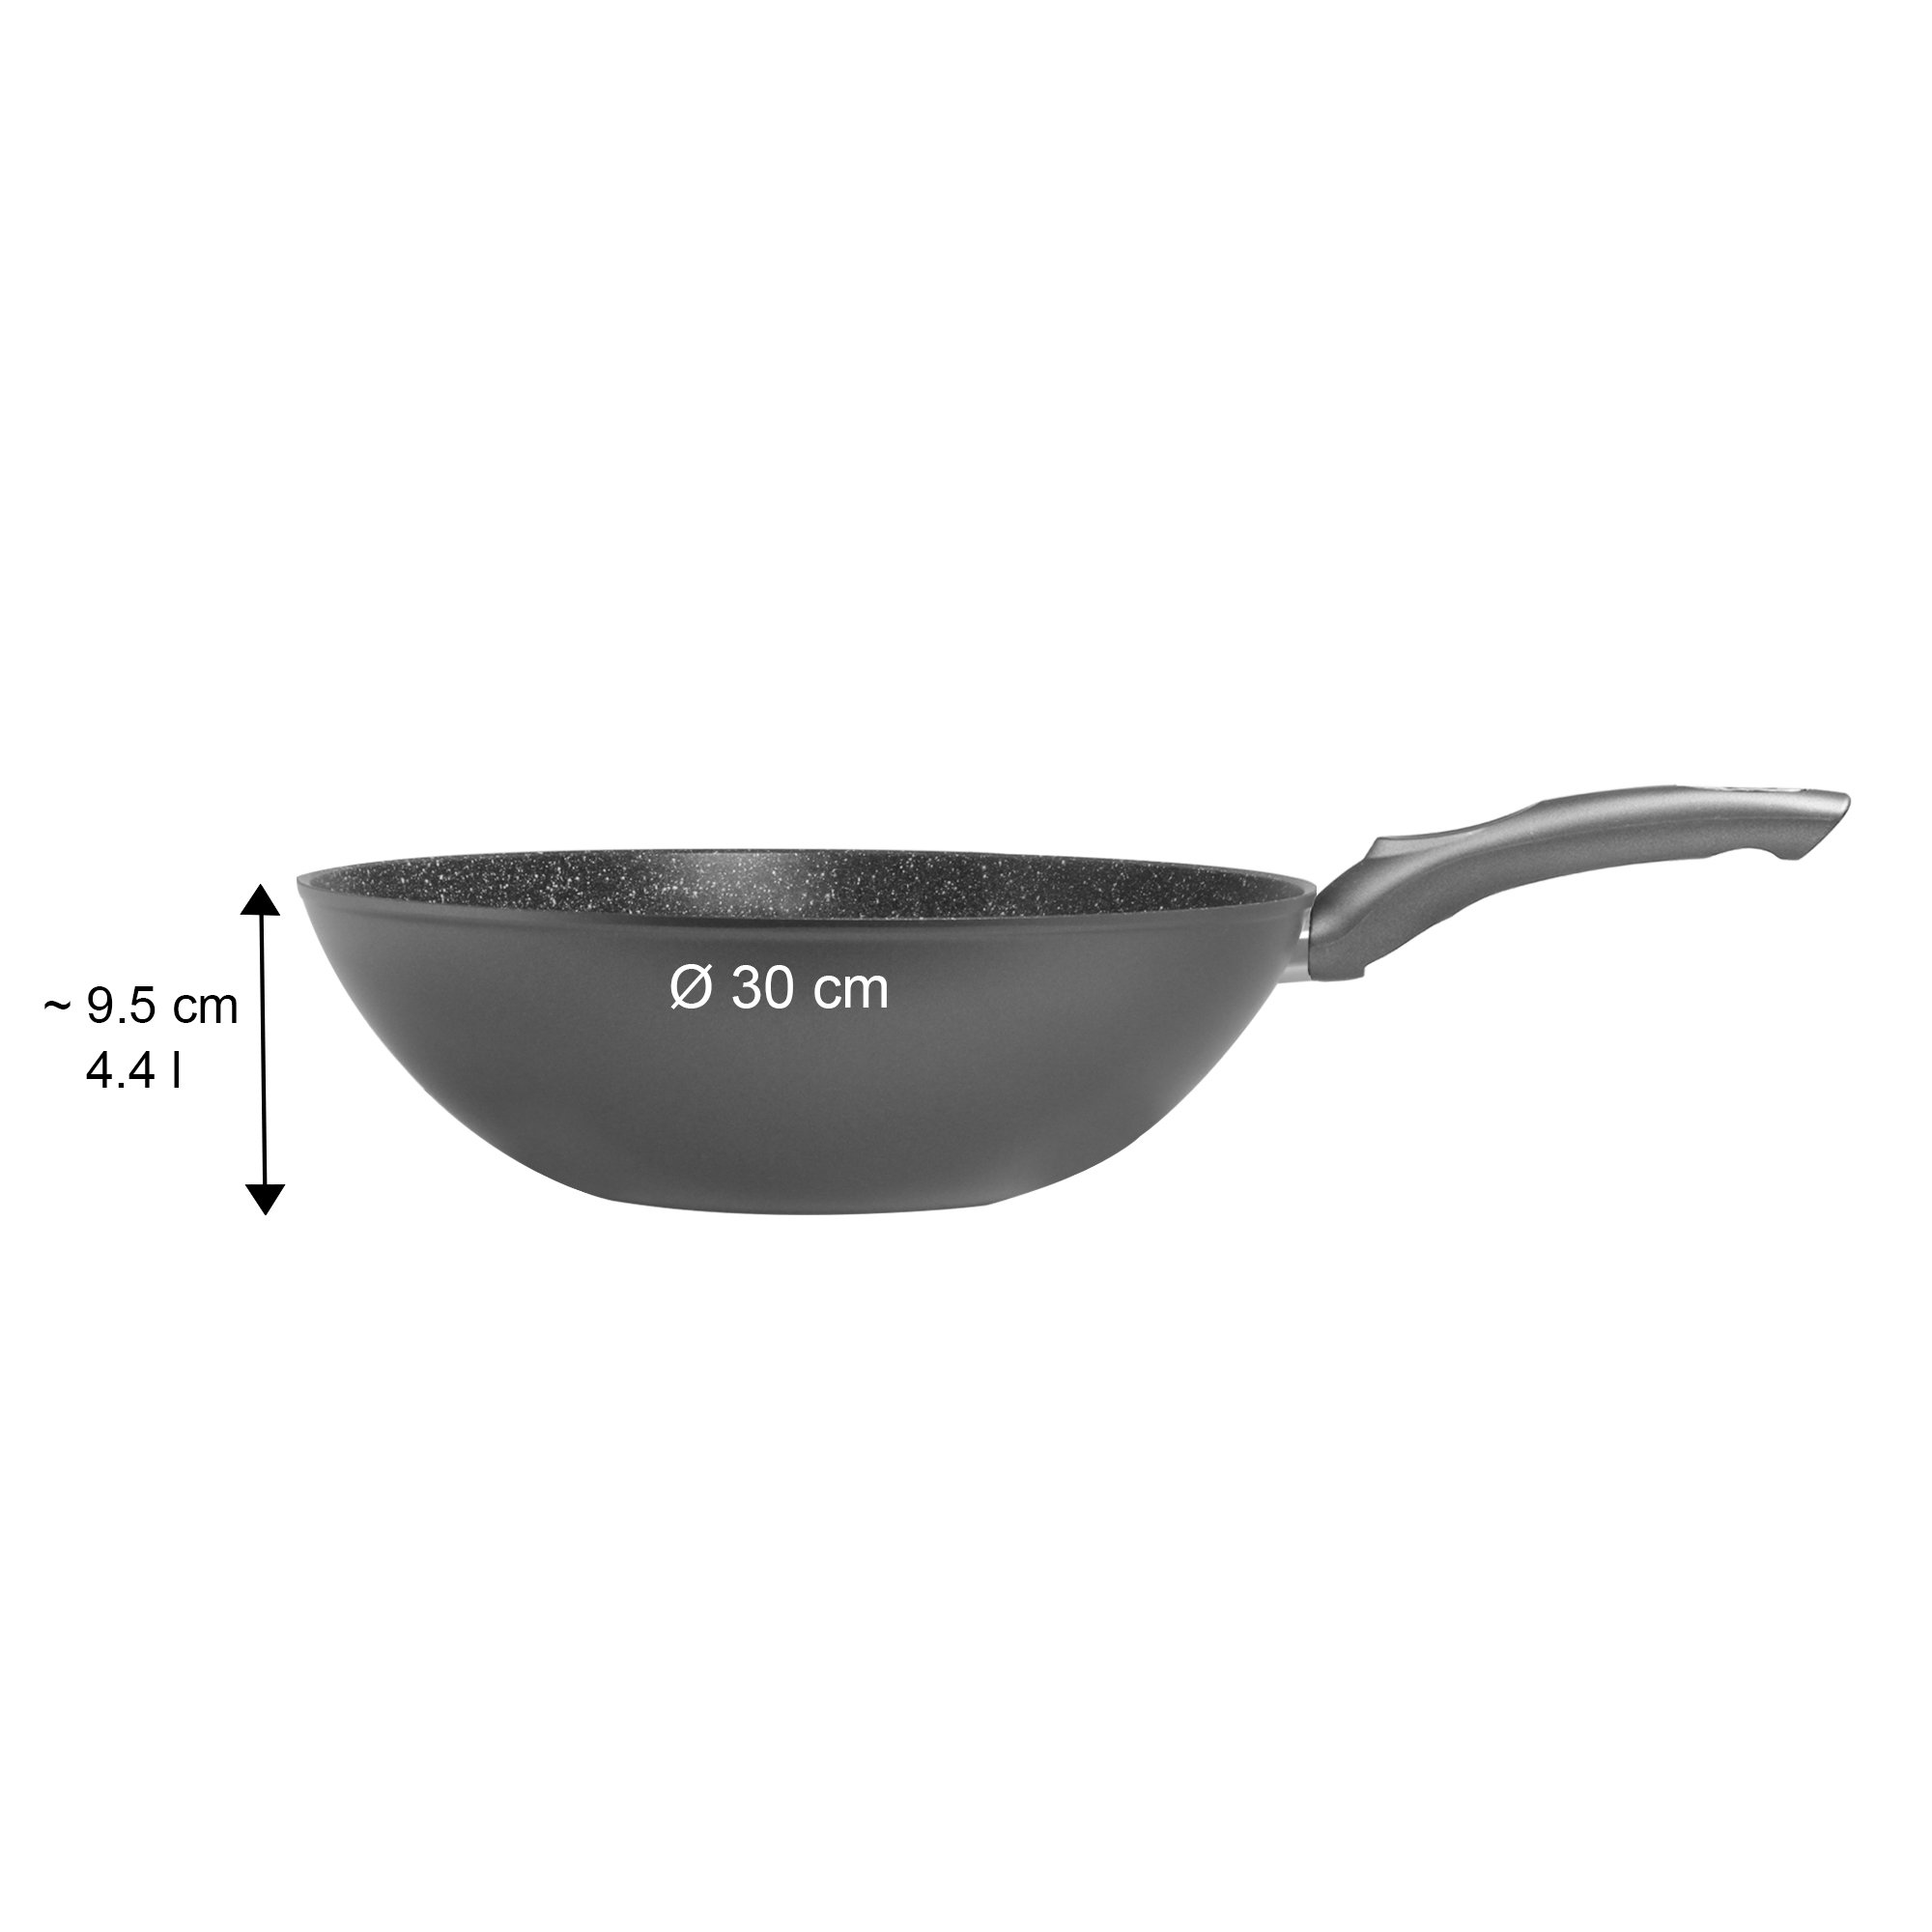 Padella wok STONELINE® Gourmundo 30 cm, Made in Germany, wok con rivestimento antiaderente, adatto all'induzione